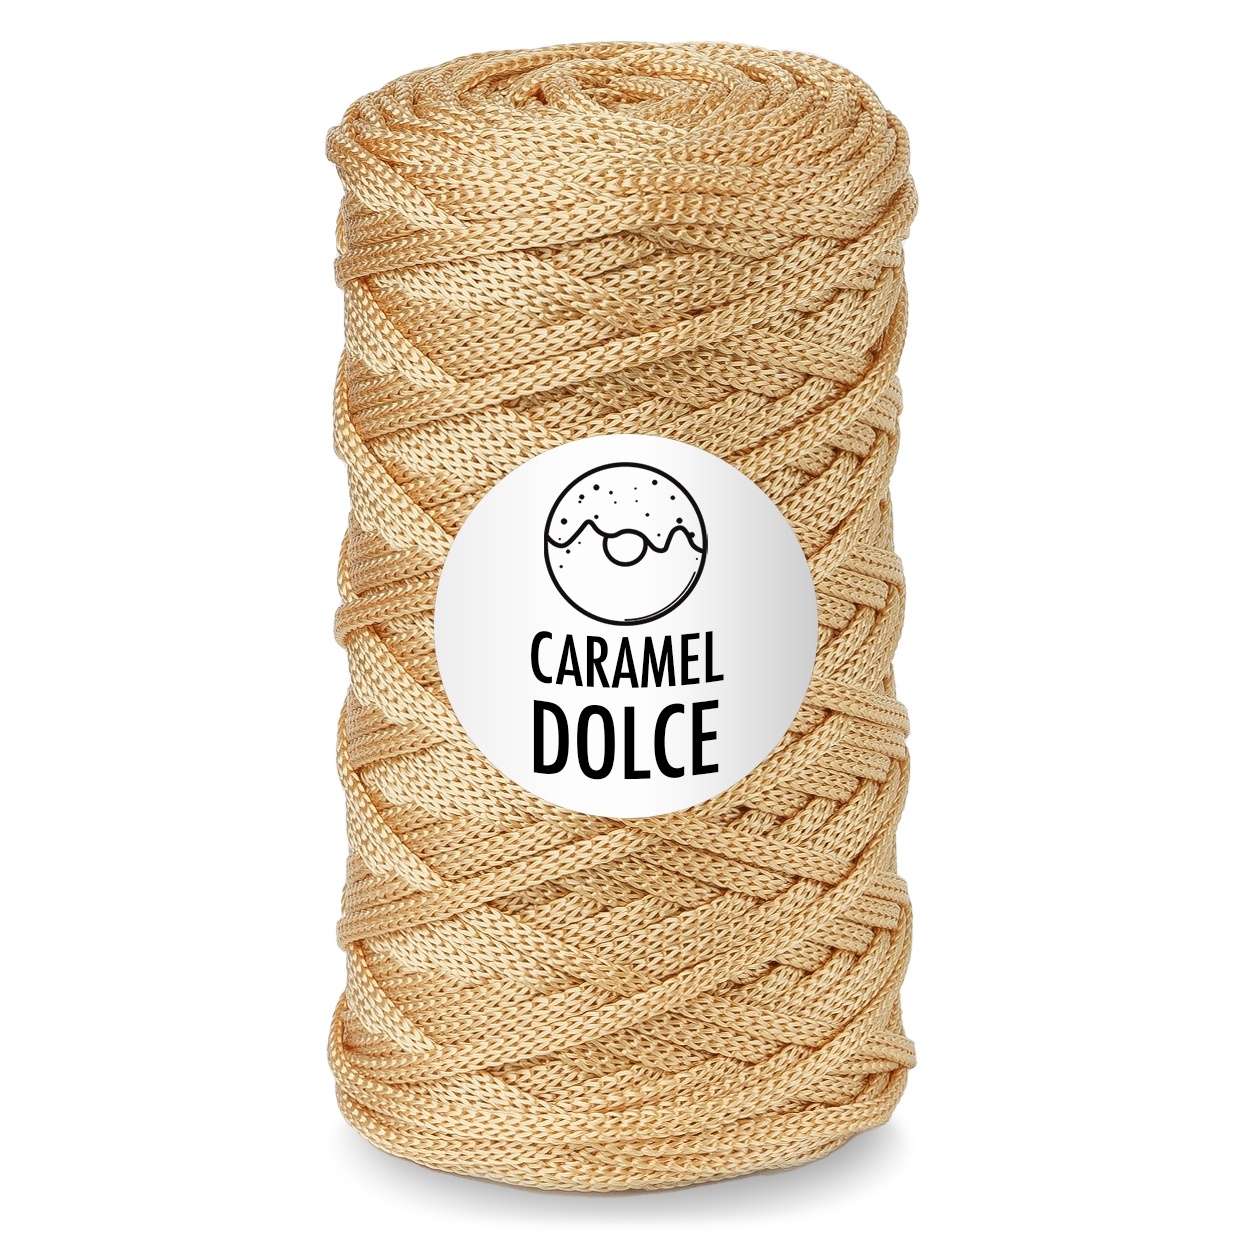 Caramel dolce. Полиэфирный шнур Caramel палитра. Полиэфирный шнур карамель цвет грей. Caramel шнур для вязания. Пряжа карамель шнур.